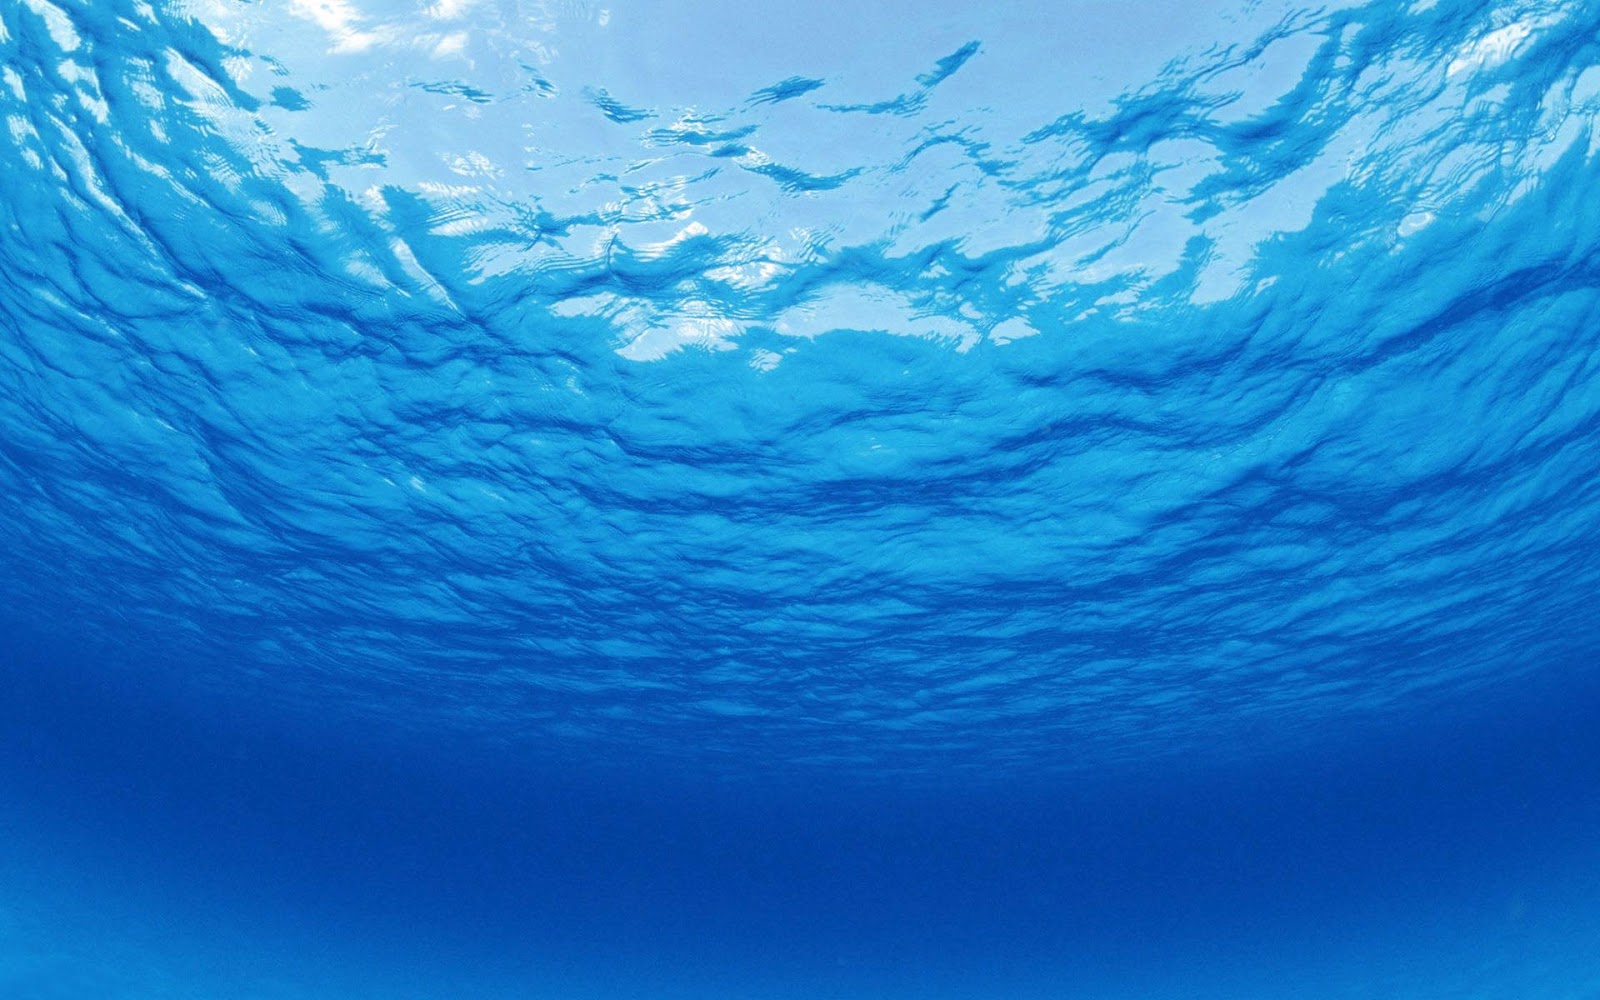 Hình nền dưới đại dương là điều tuyệt vời cho những ai yêu biển cả. Bạn có thể tìm kiếm nhiều hình ảnh tuyệt đẹp của đại dương với những sinh vật kỳ thú và một dải nước xanh trong lành, tạo cảm giác như bạn đang được lặn sâu dưới lòng biển.